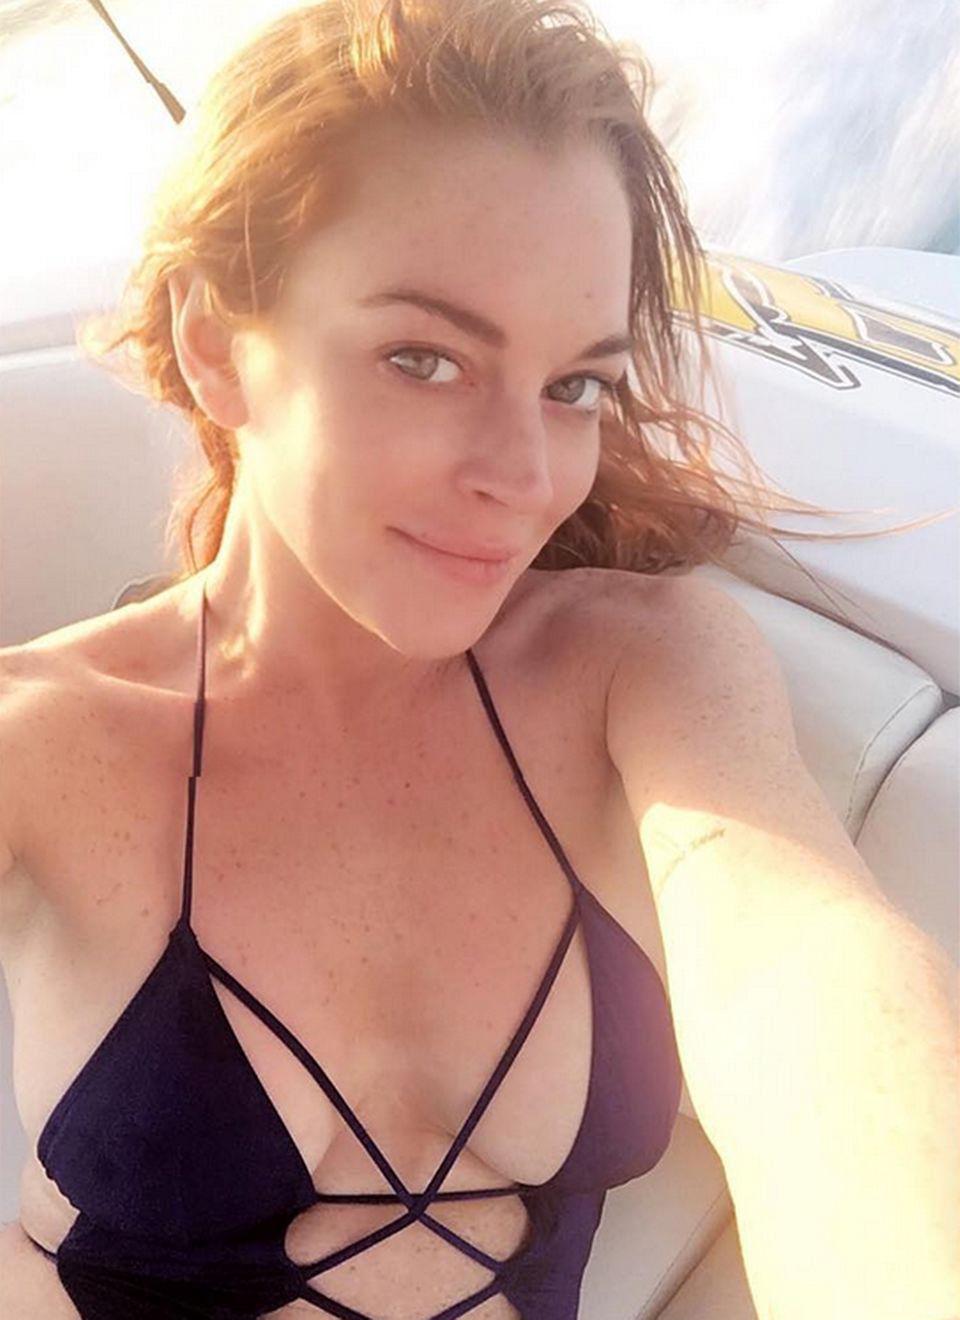 Die schlimmen Jahre sind wohl wirklich vorbei. Lindsay Lohan zeigt sich auf Instagram wie hier immer ofter glücklich und auch ohne Make-up schön, entspannt und vor allen Dingen mit klaren, großen Augen. Die Liebe zu ihrem Verlobten, dem russischen Erben Egor Tarabasov scheint ihr wirklich gut zu tun.